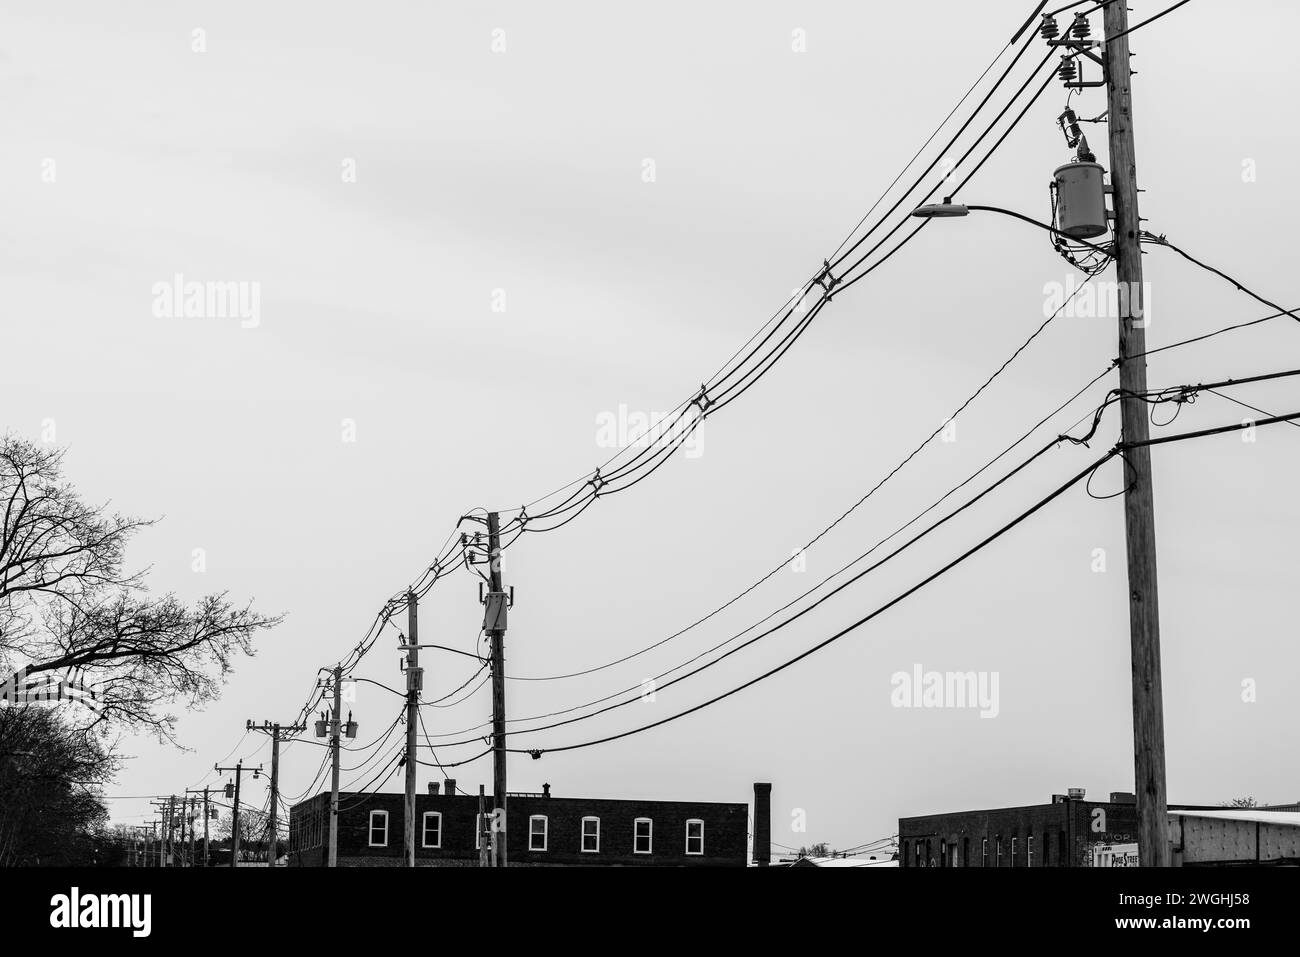 Manchester, New Hampshire, Stati Uniti - pali elettrici con linee elettriche Foto Stock